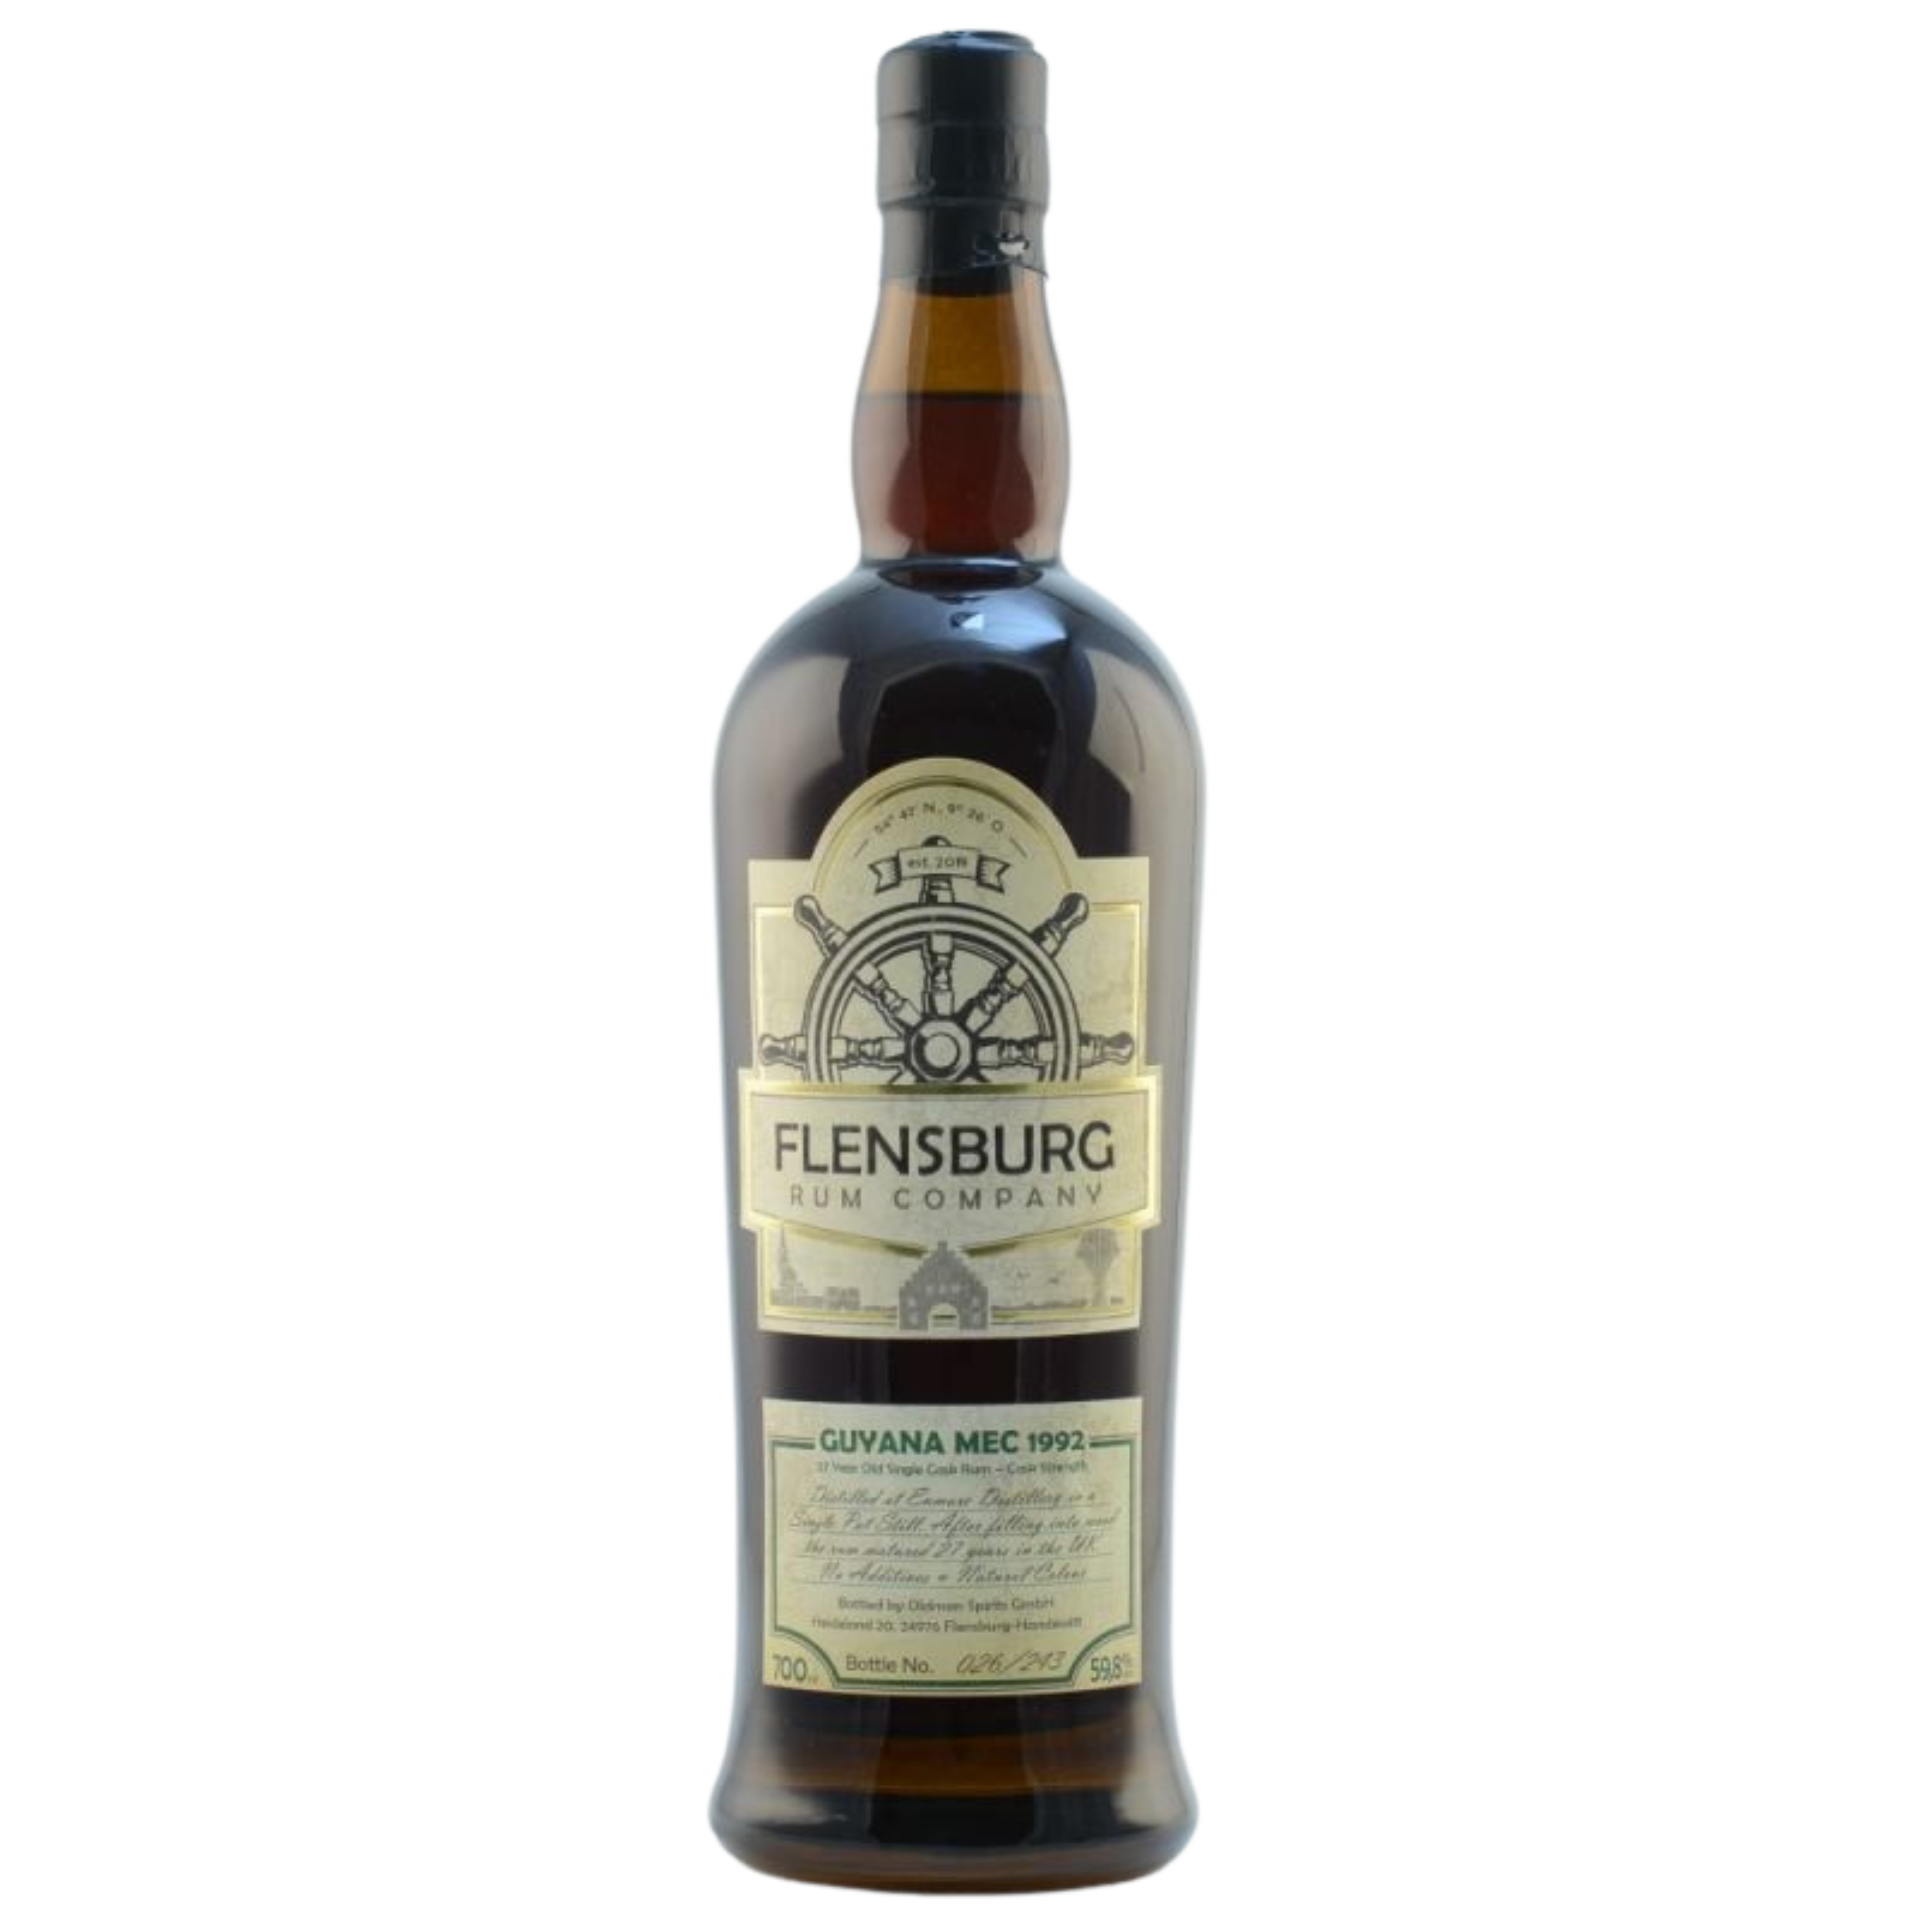 Flensburg Rum Company Guyana MEC 1992 Rum 59,8% 0,7l